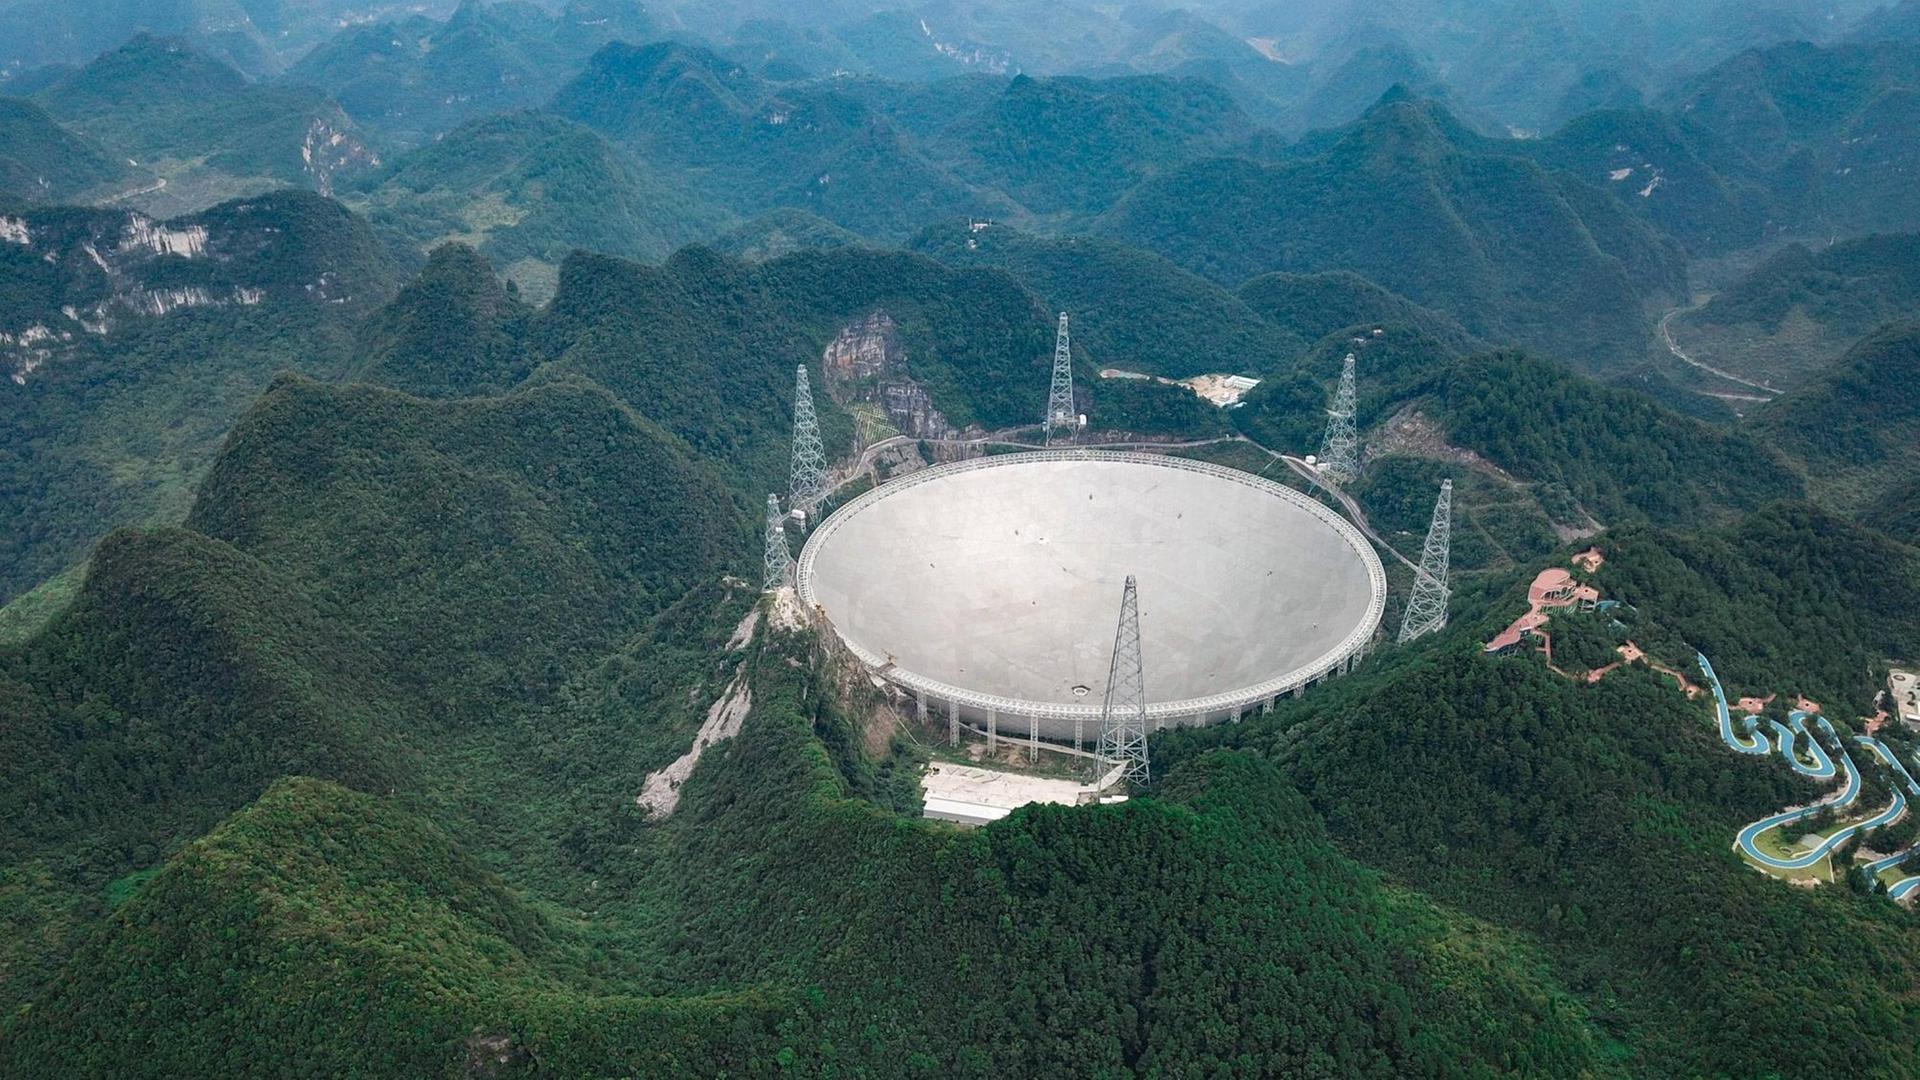 Mit einem Durchmesser von mehr als 500 Metern ist das kreisrunde Observatorium FAST in der Bergregion der südwestlichen Provinz Guizhou in China das größte Radioteleskop der Welt